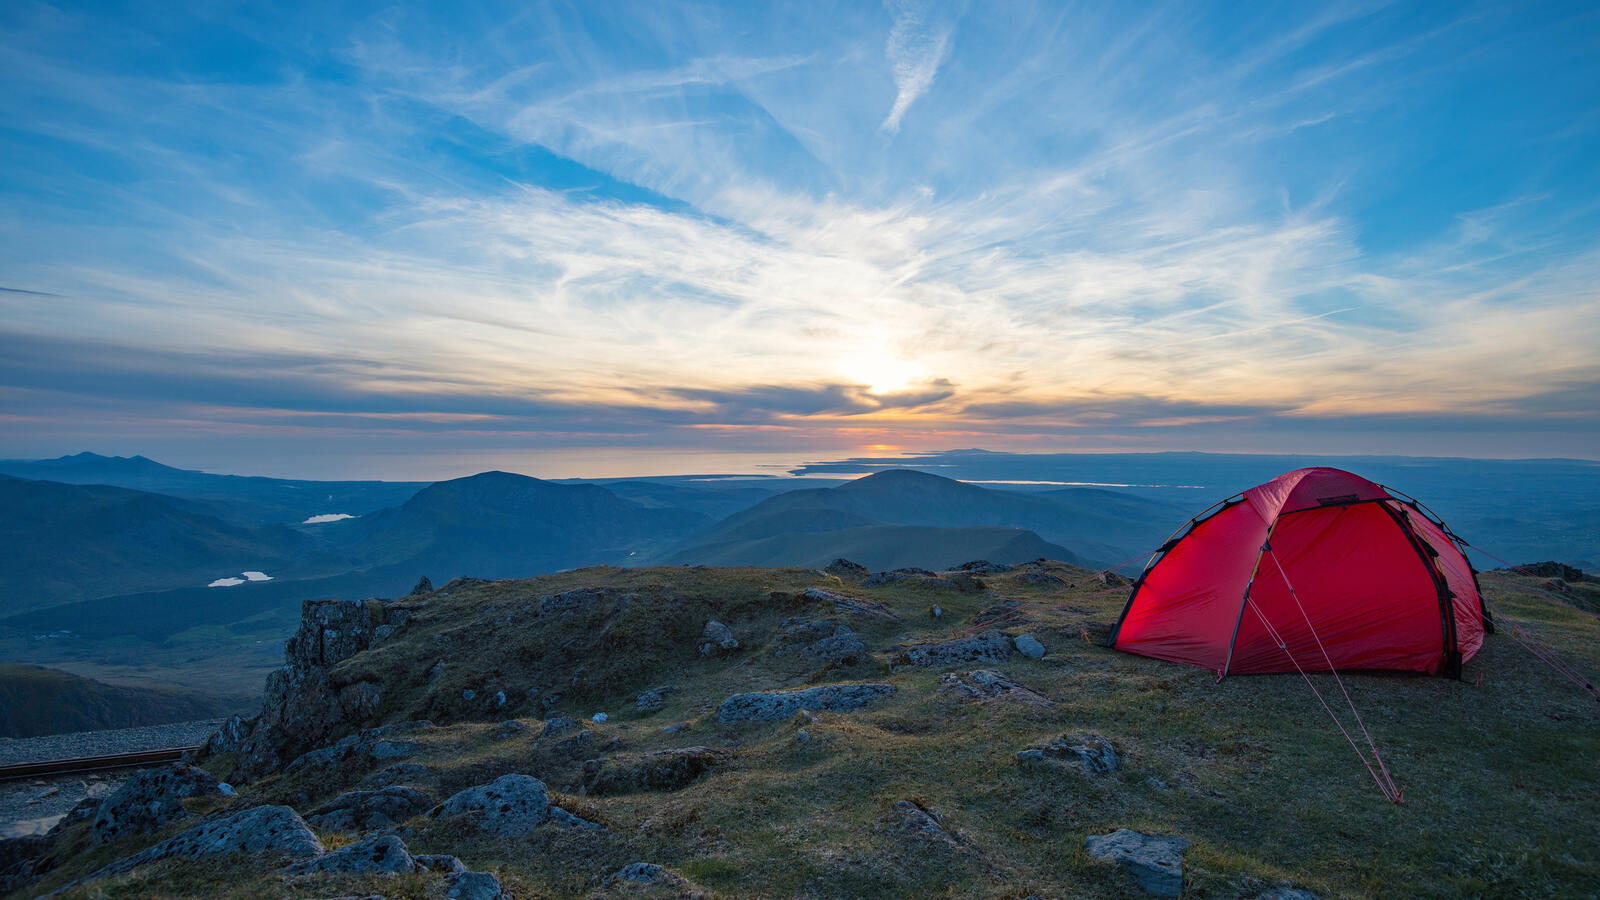 Бесплатное фото Туристическая палатка алеет в горах